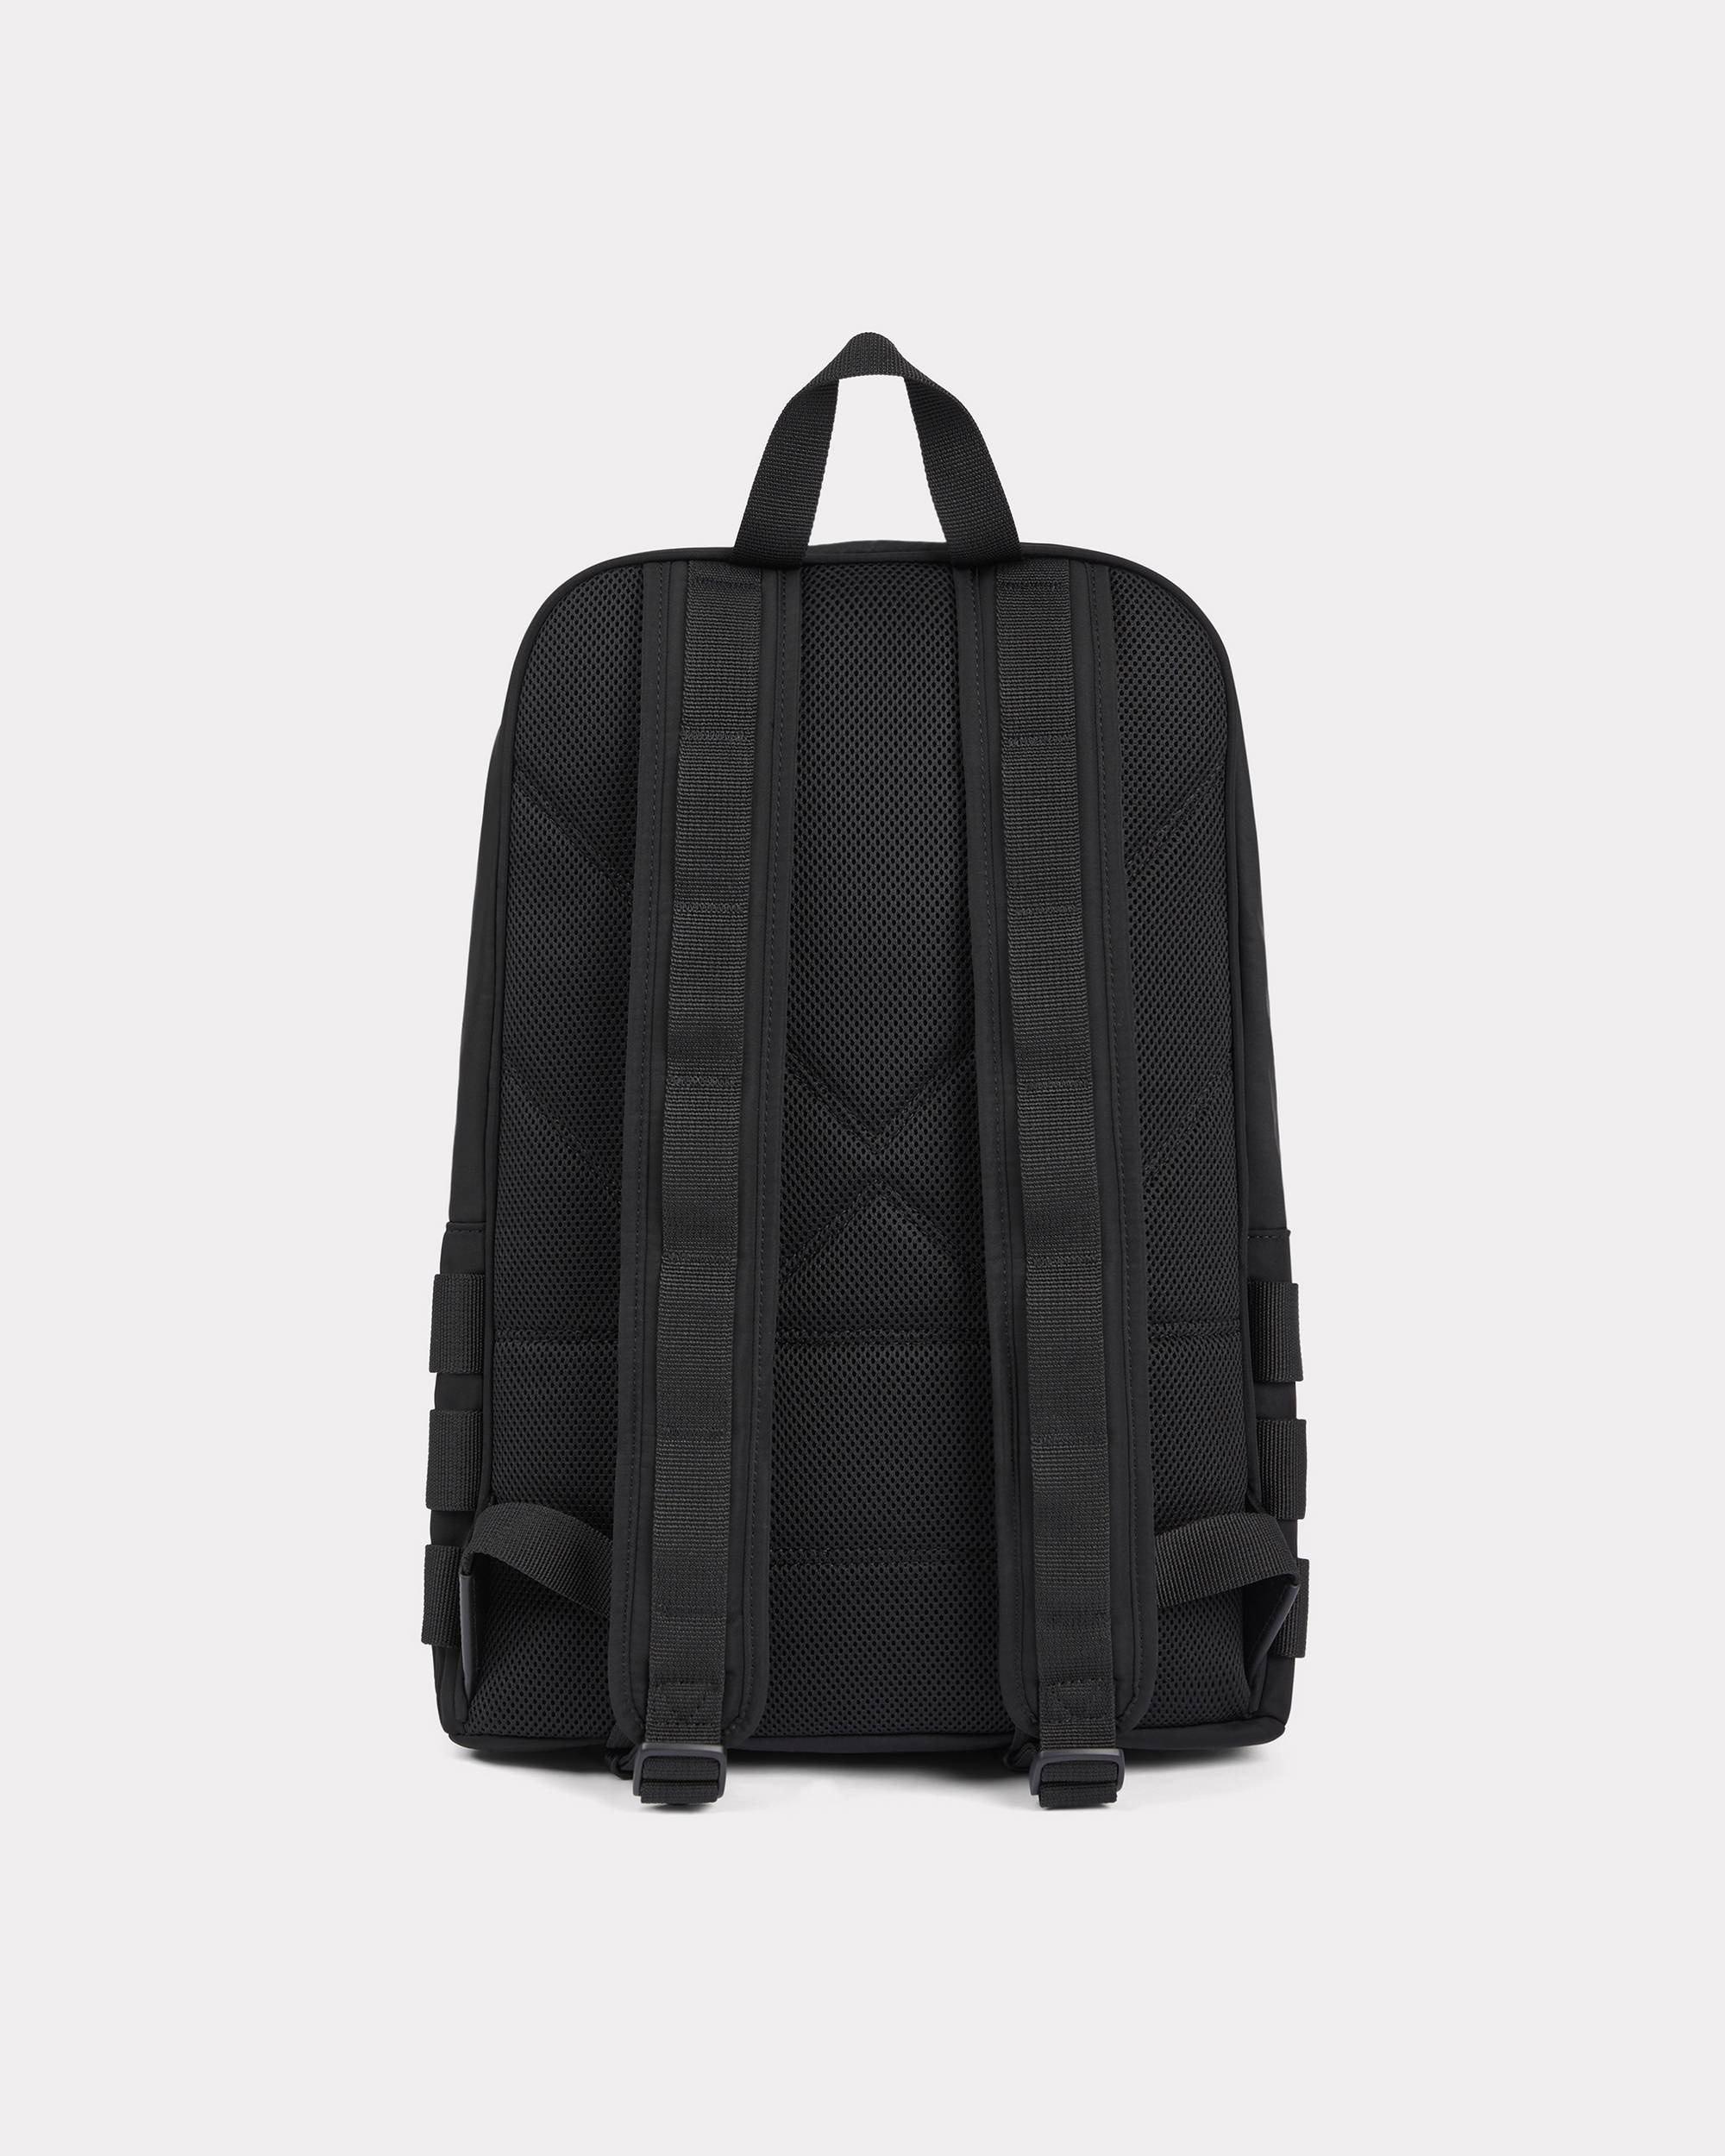 'KENZO Jungle' backpack - 2